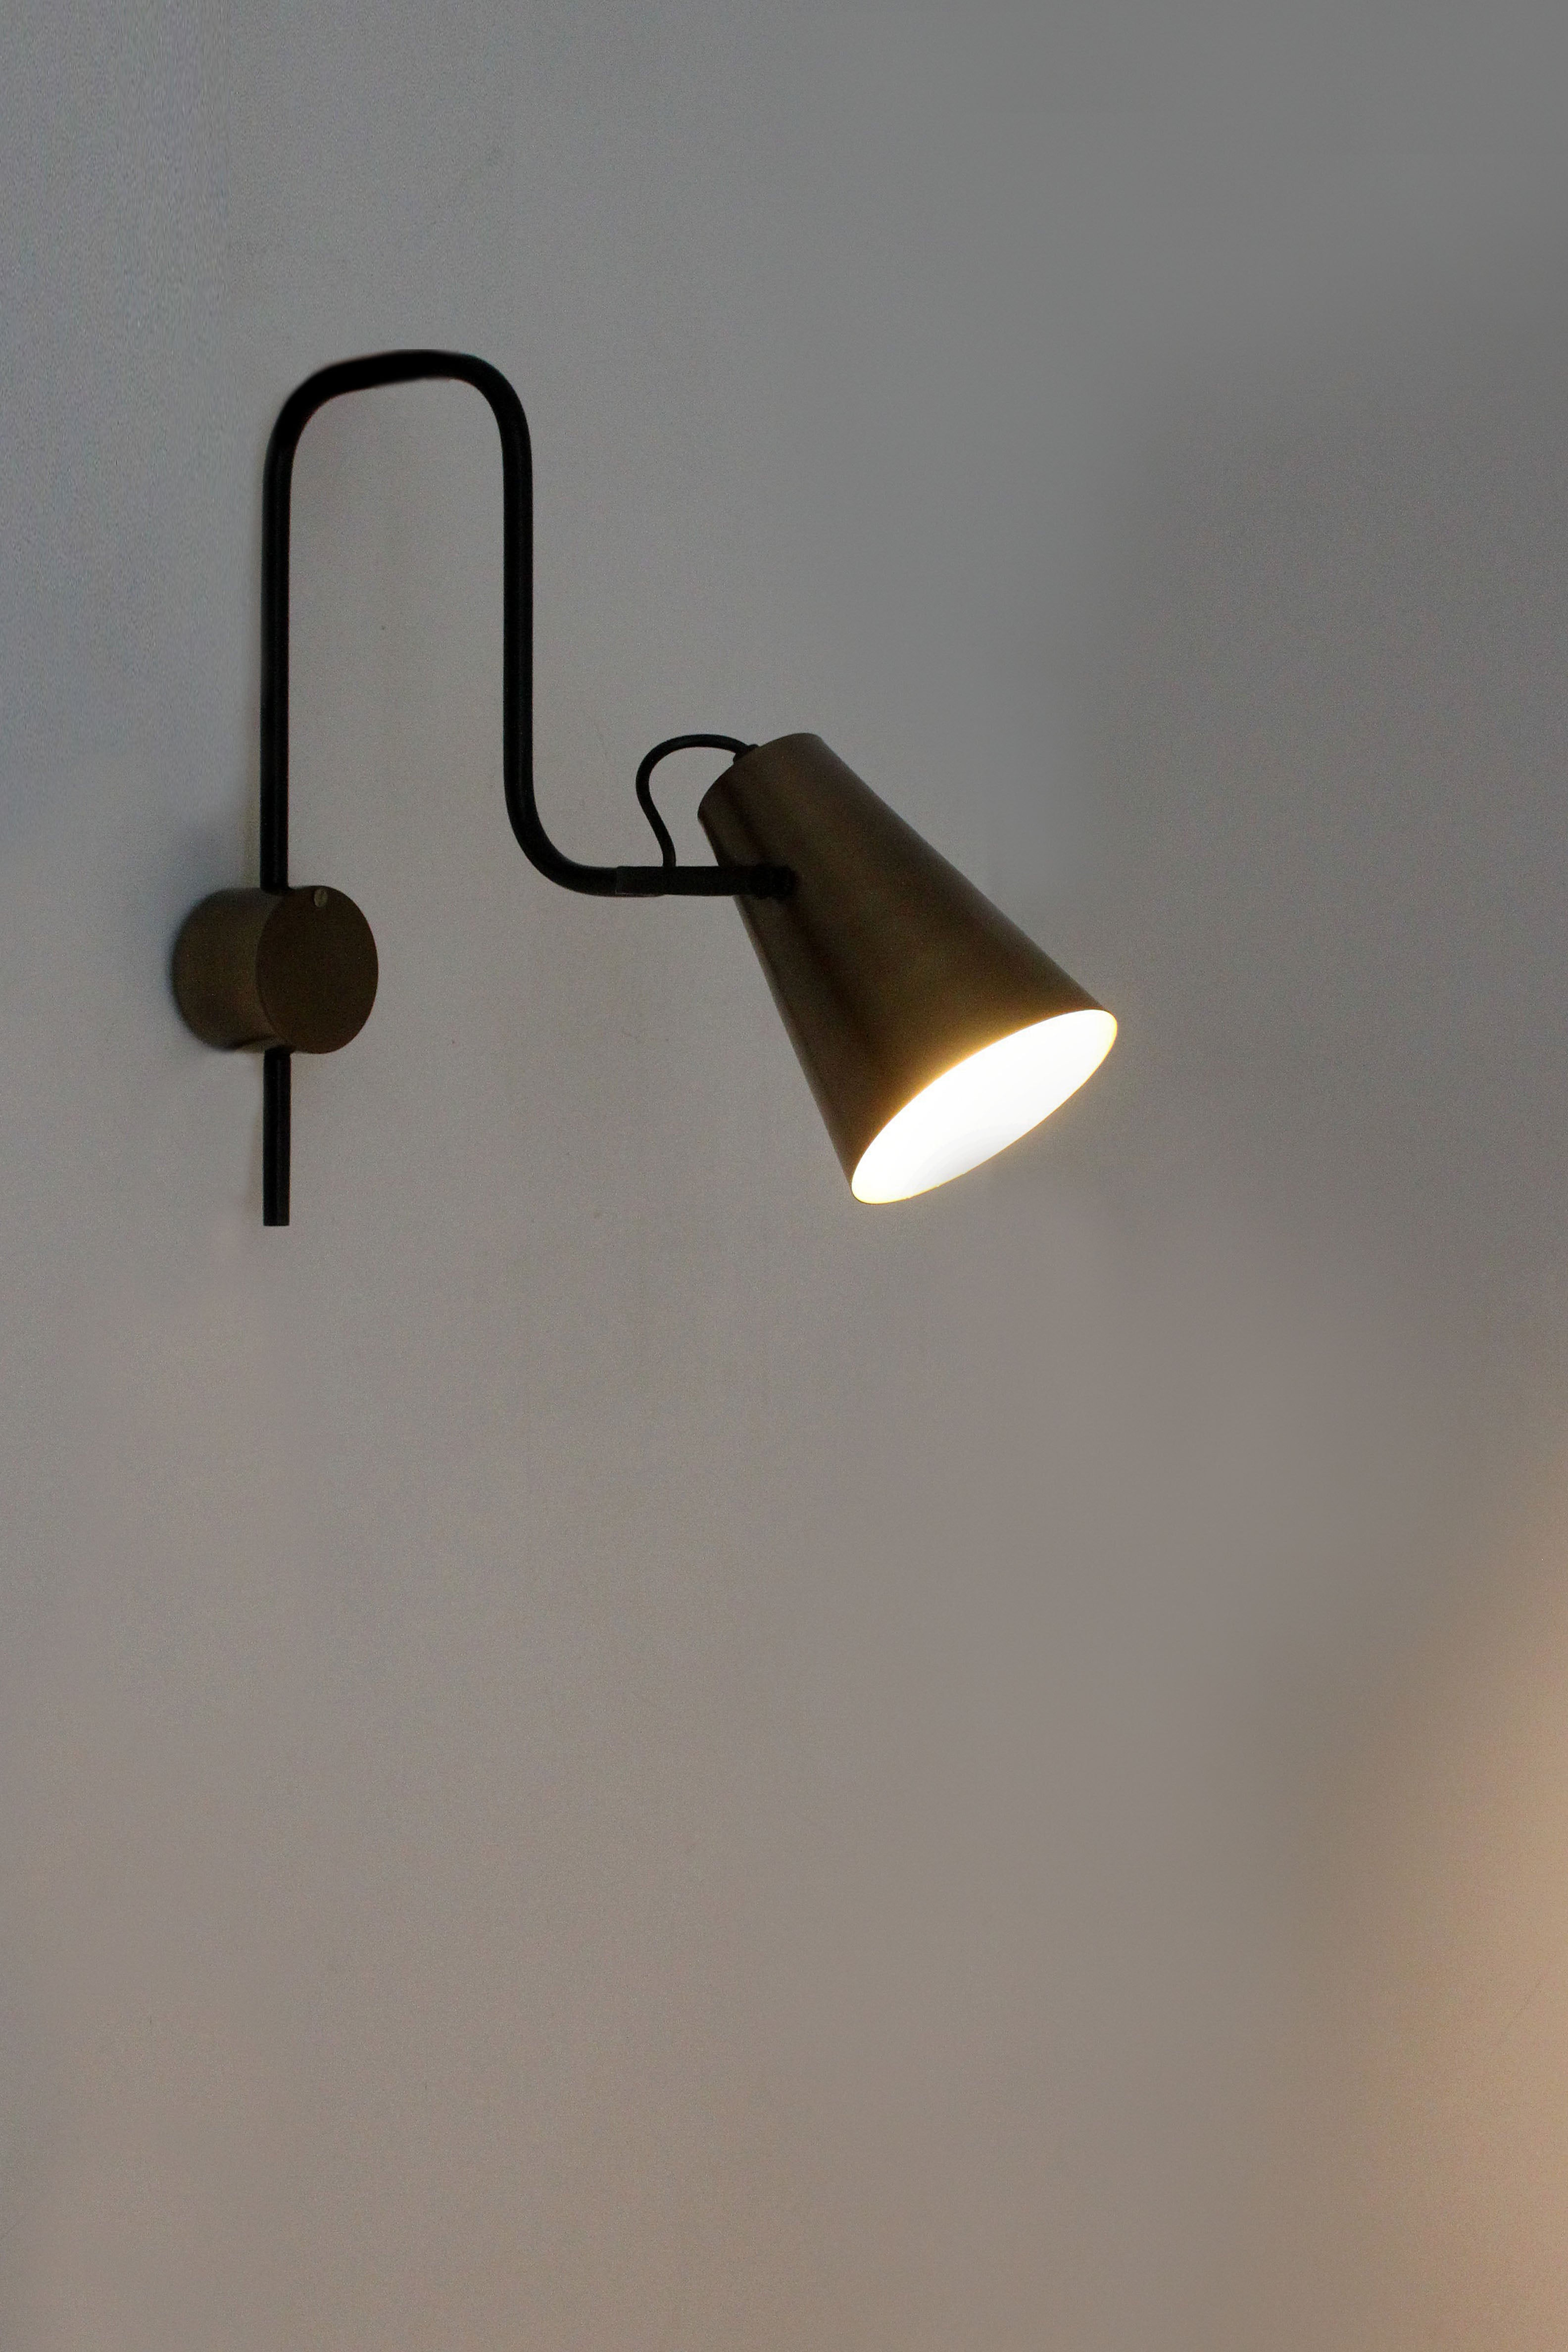 Gir Wall lamp in stock